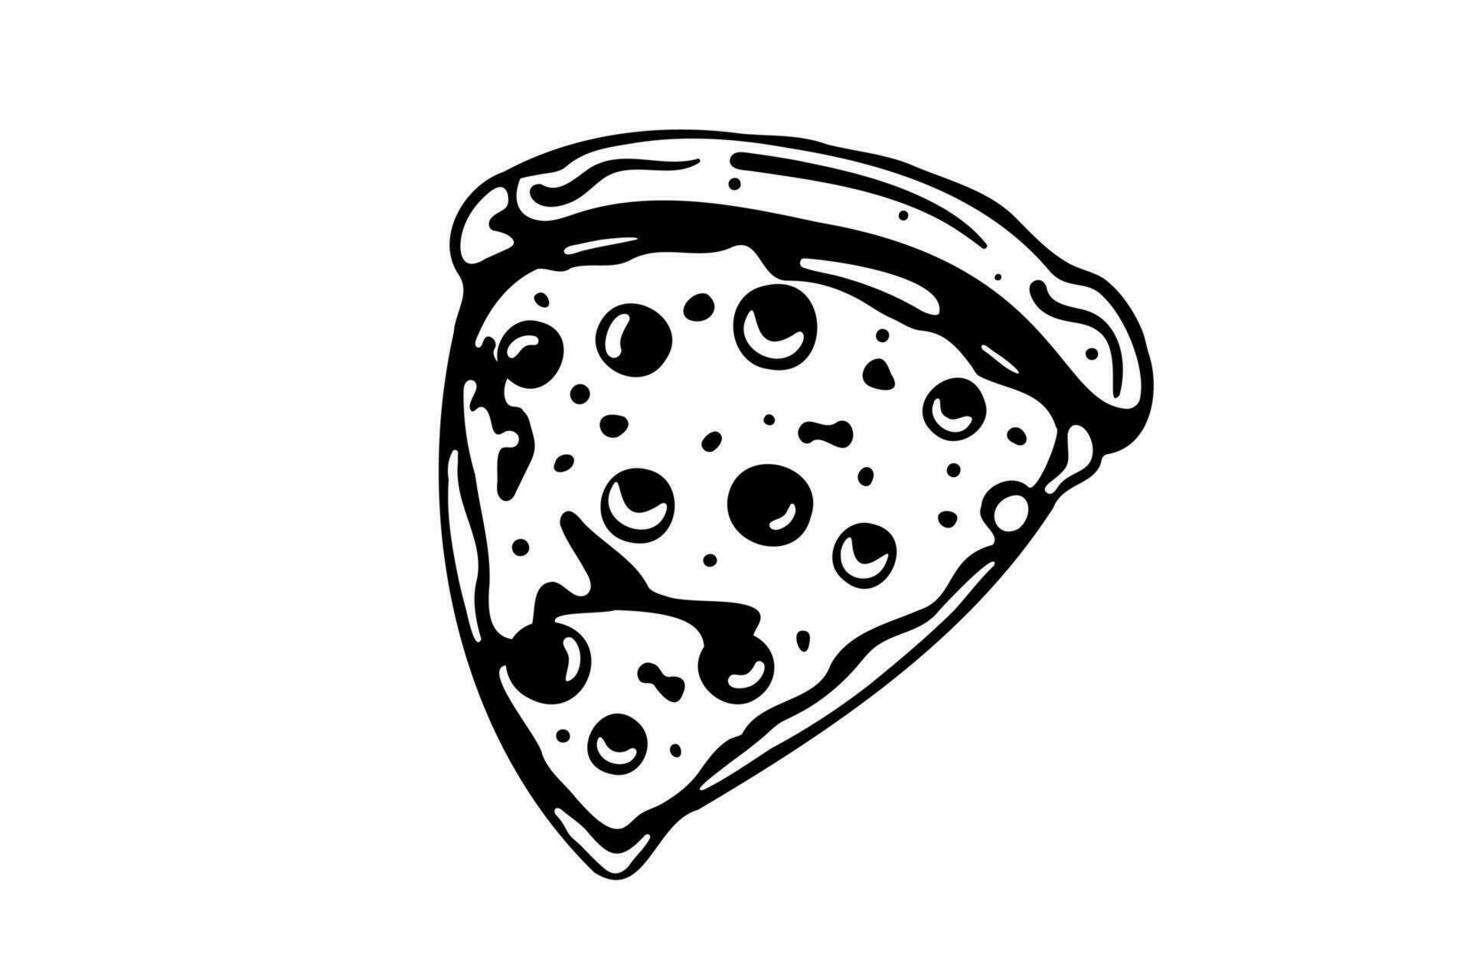 pizza plak met gesmolten kaas en peperoni. vector tekenfilm sticker in grappig stijl met contour. ontwerp element voedsel voor groet kaart, poster, afdrukken voor kleren, embleem.